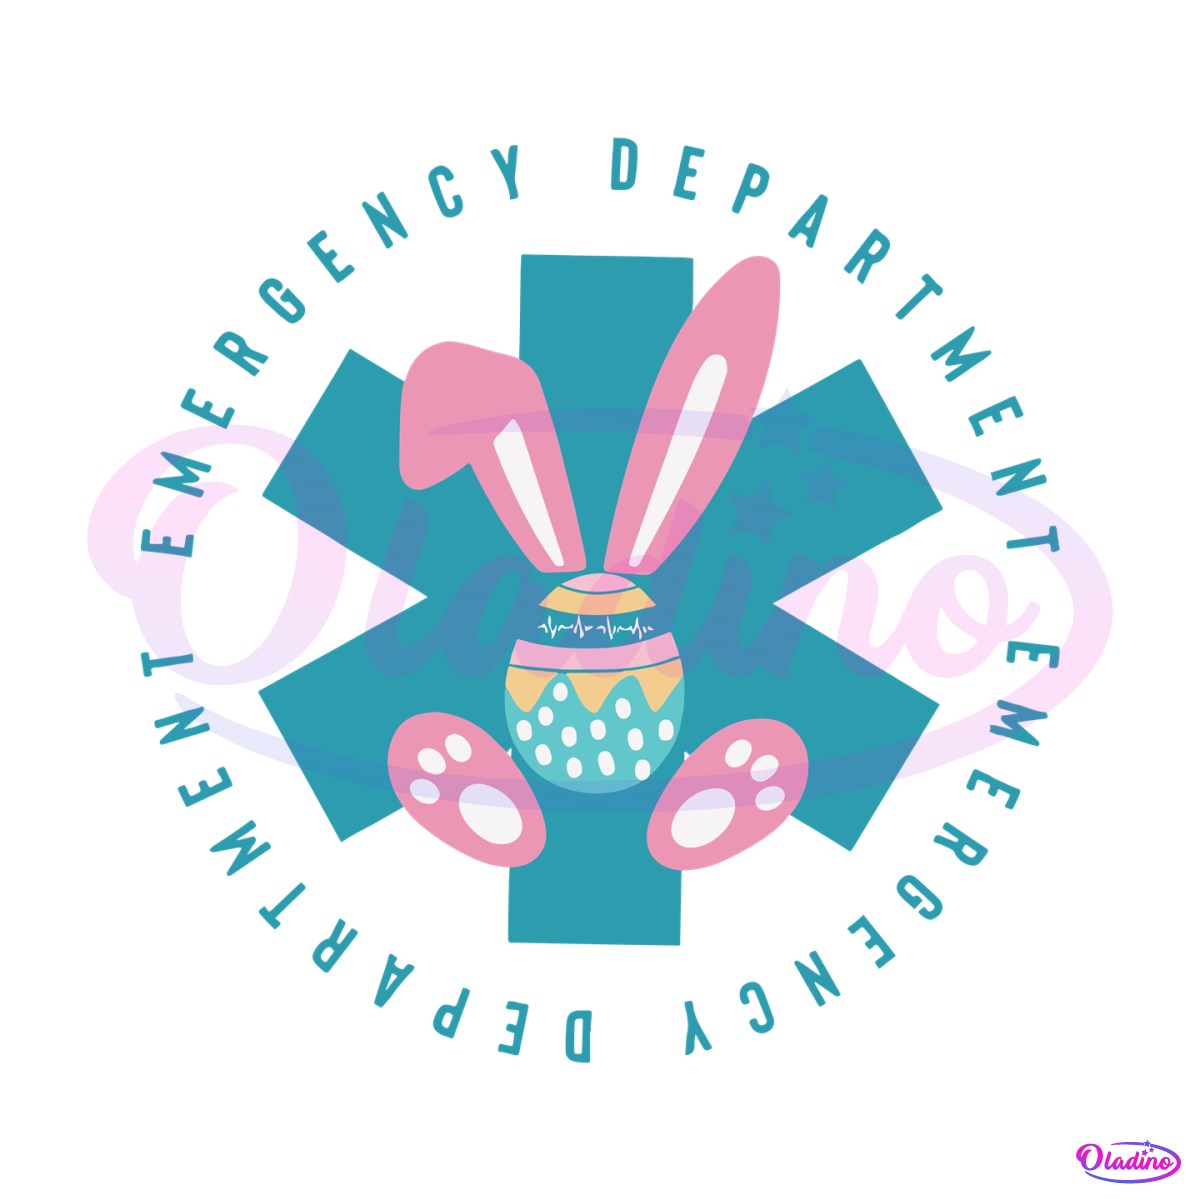 easter-emergency-department-bunny-er-nurse-svg